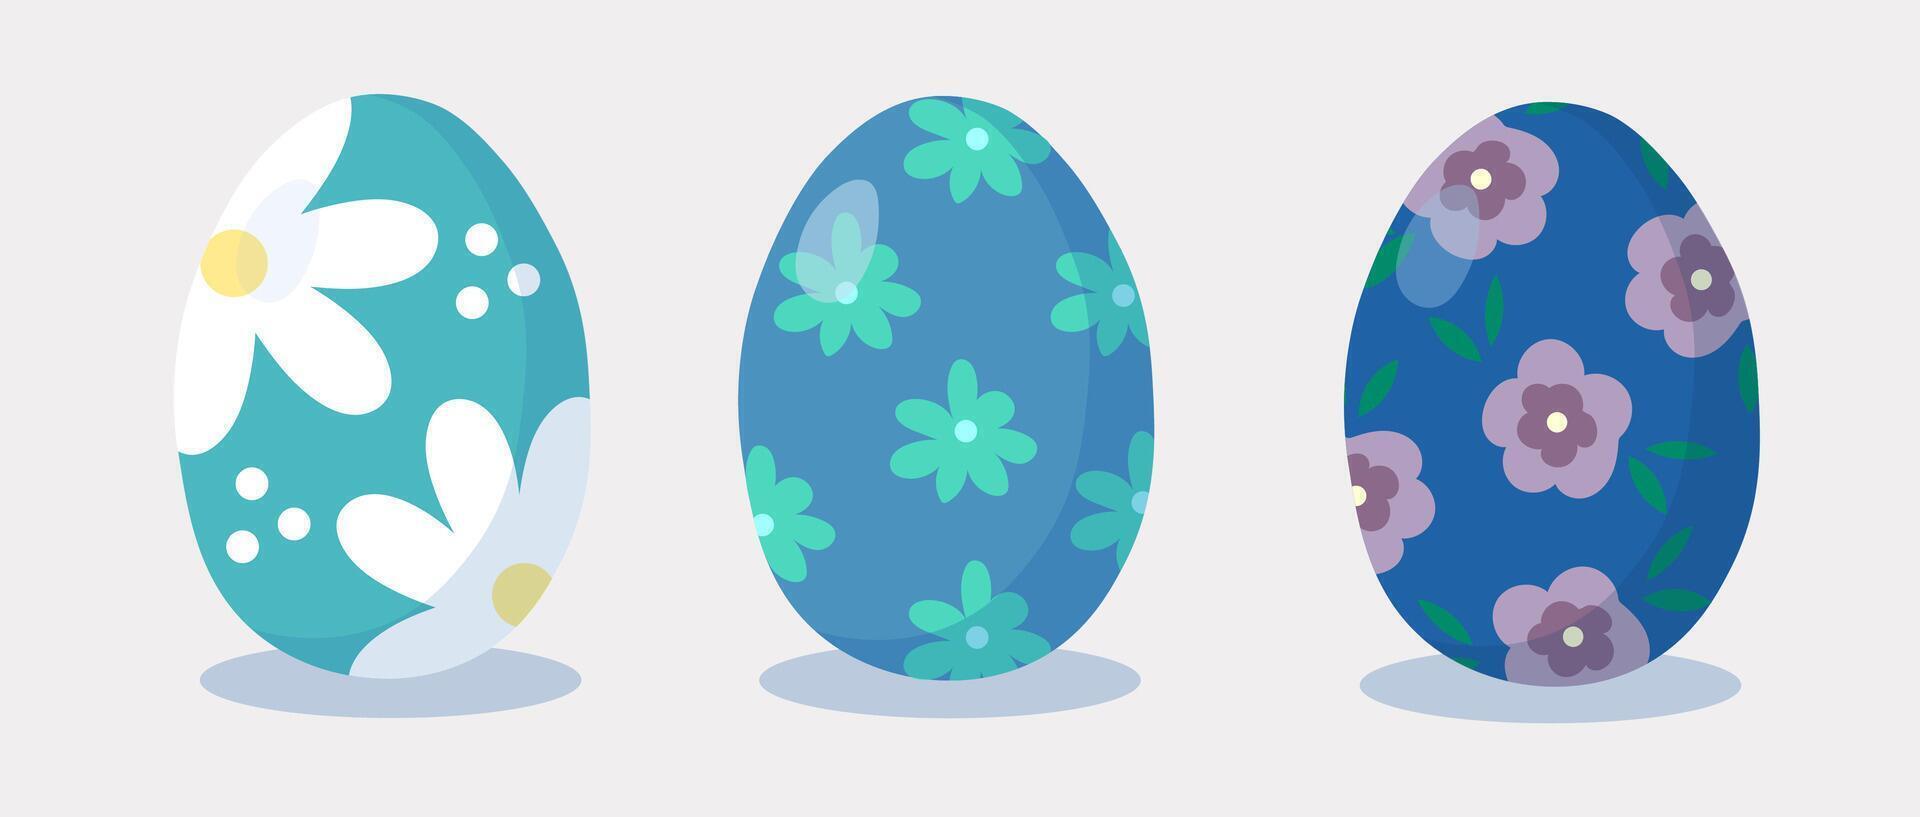 Ostern Eier Satz. glücklich Ostern. Hand gezeichnet. Blau Eier mit Blumen. Vektor Illustration.